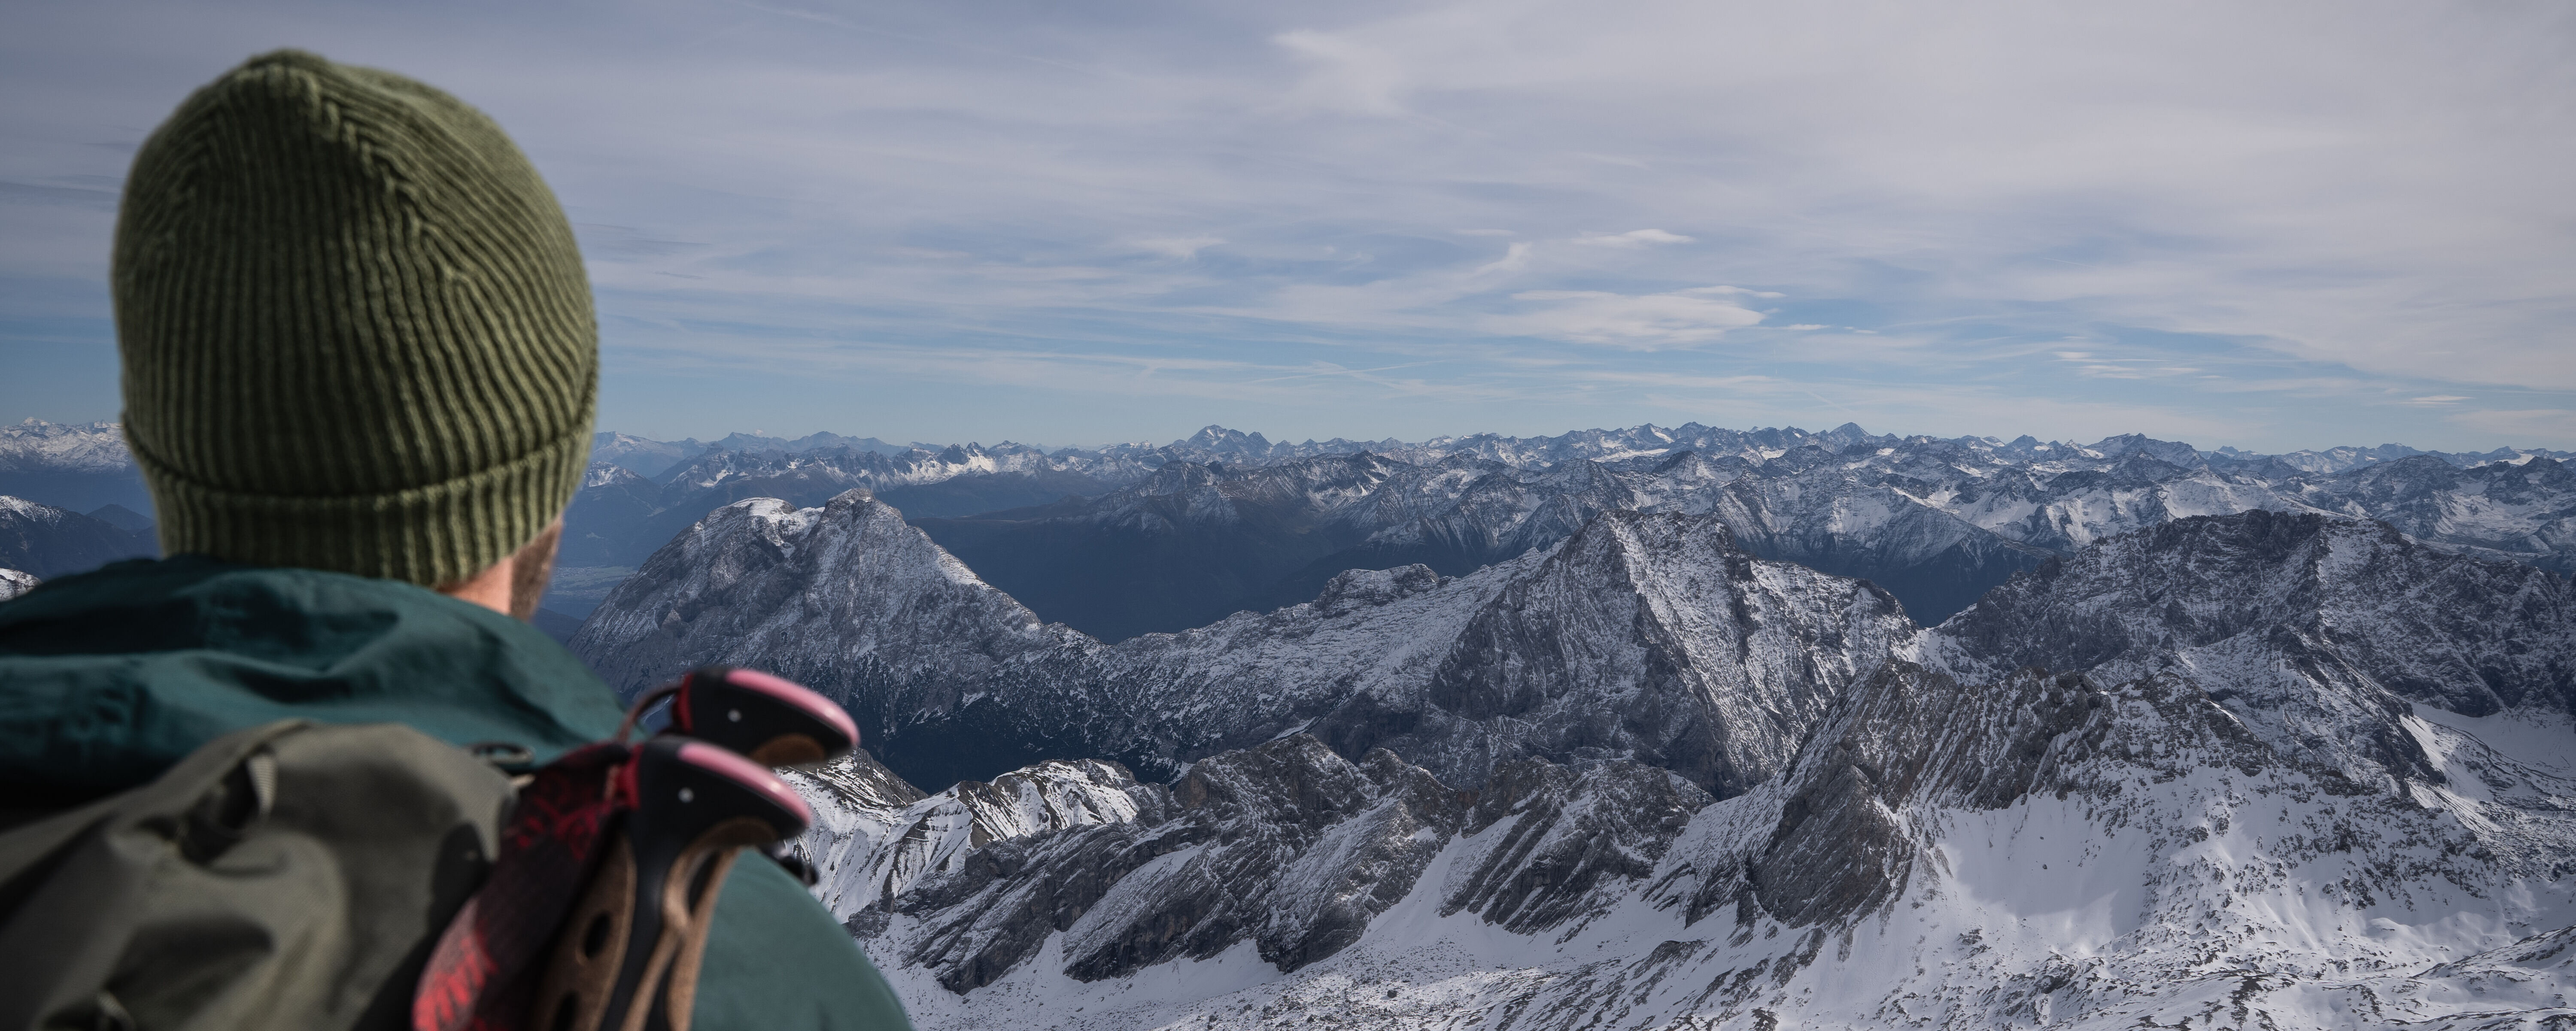 Blick auf verschneite Alpen in Garmisch-Partenkirchen | © GaPa Tourismus GmbH/Roadtrip the World